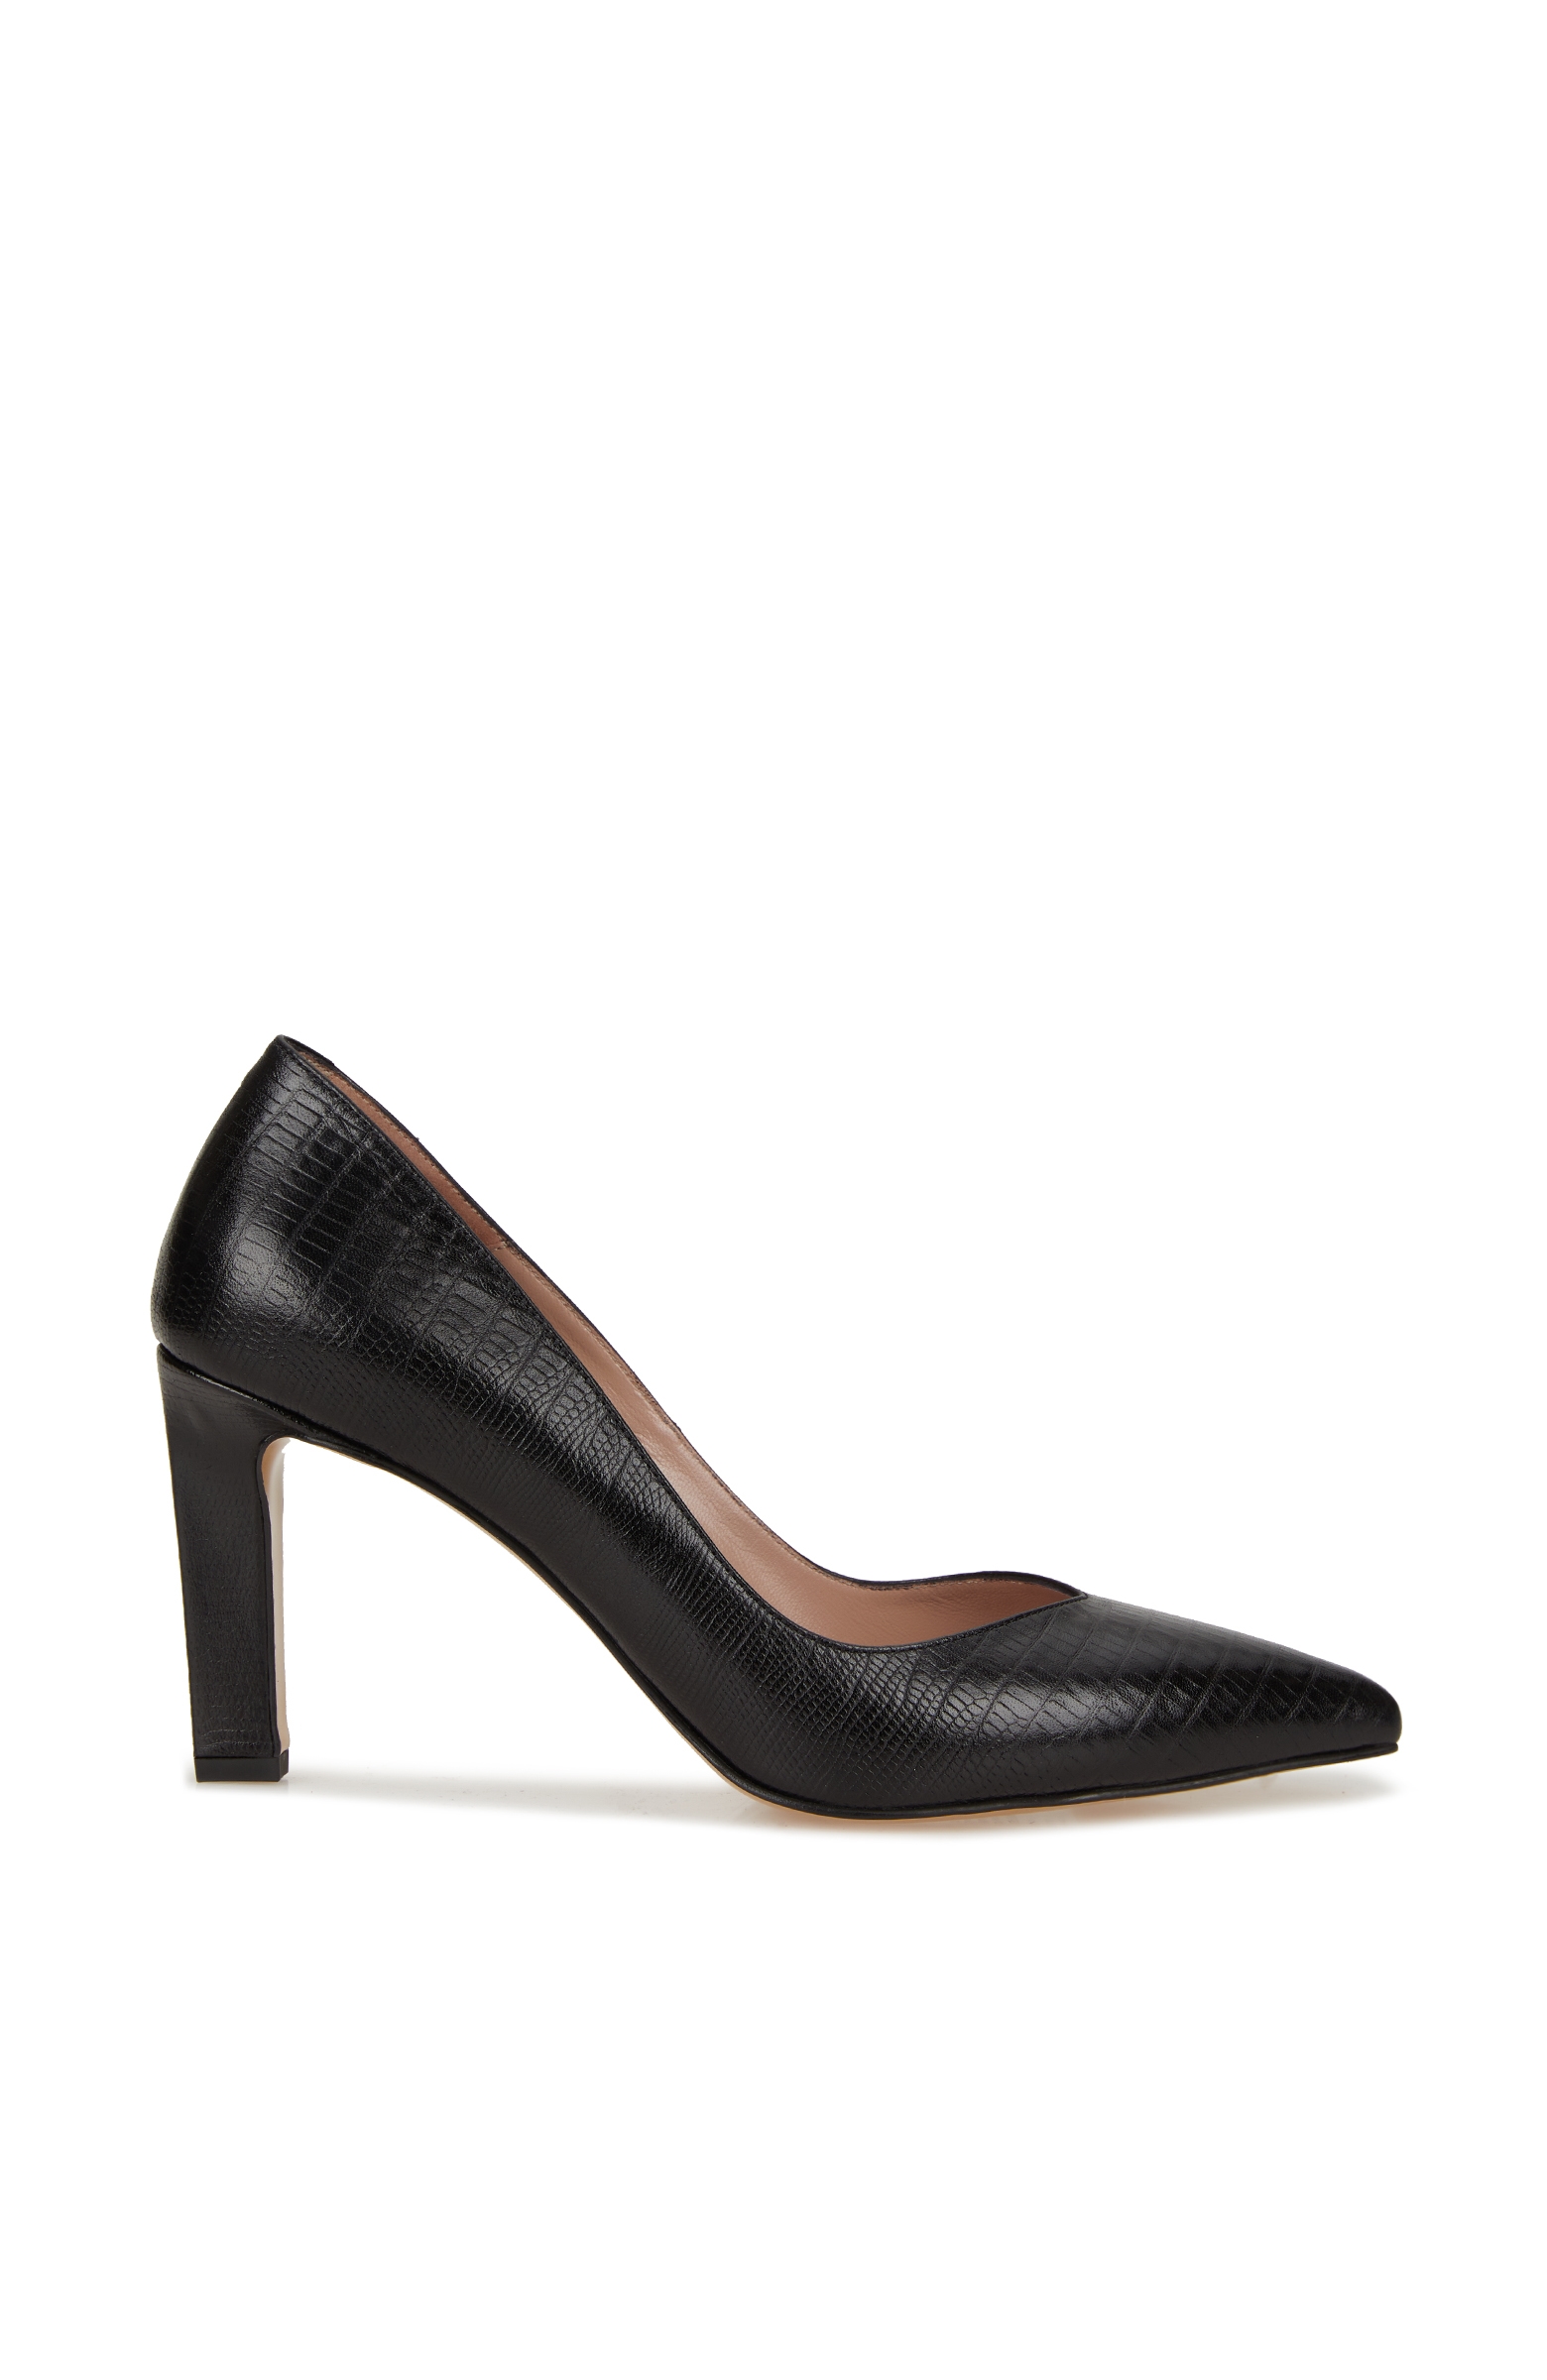 Siyah Deri Topuklu Kadın Ayakkabı